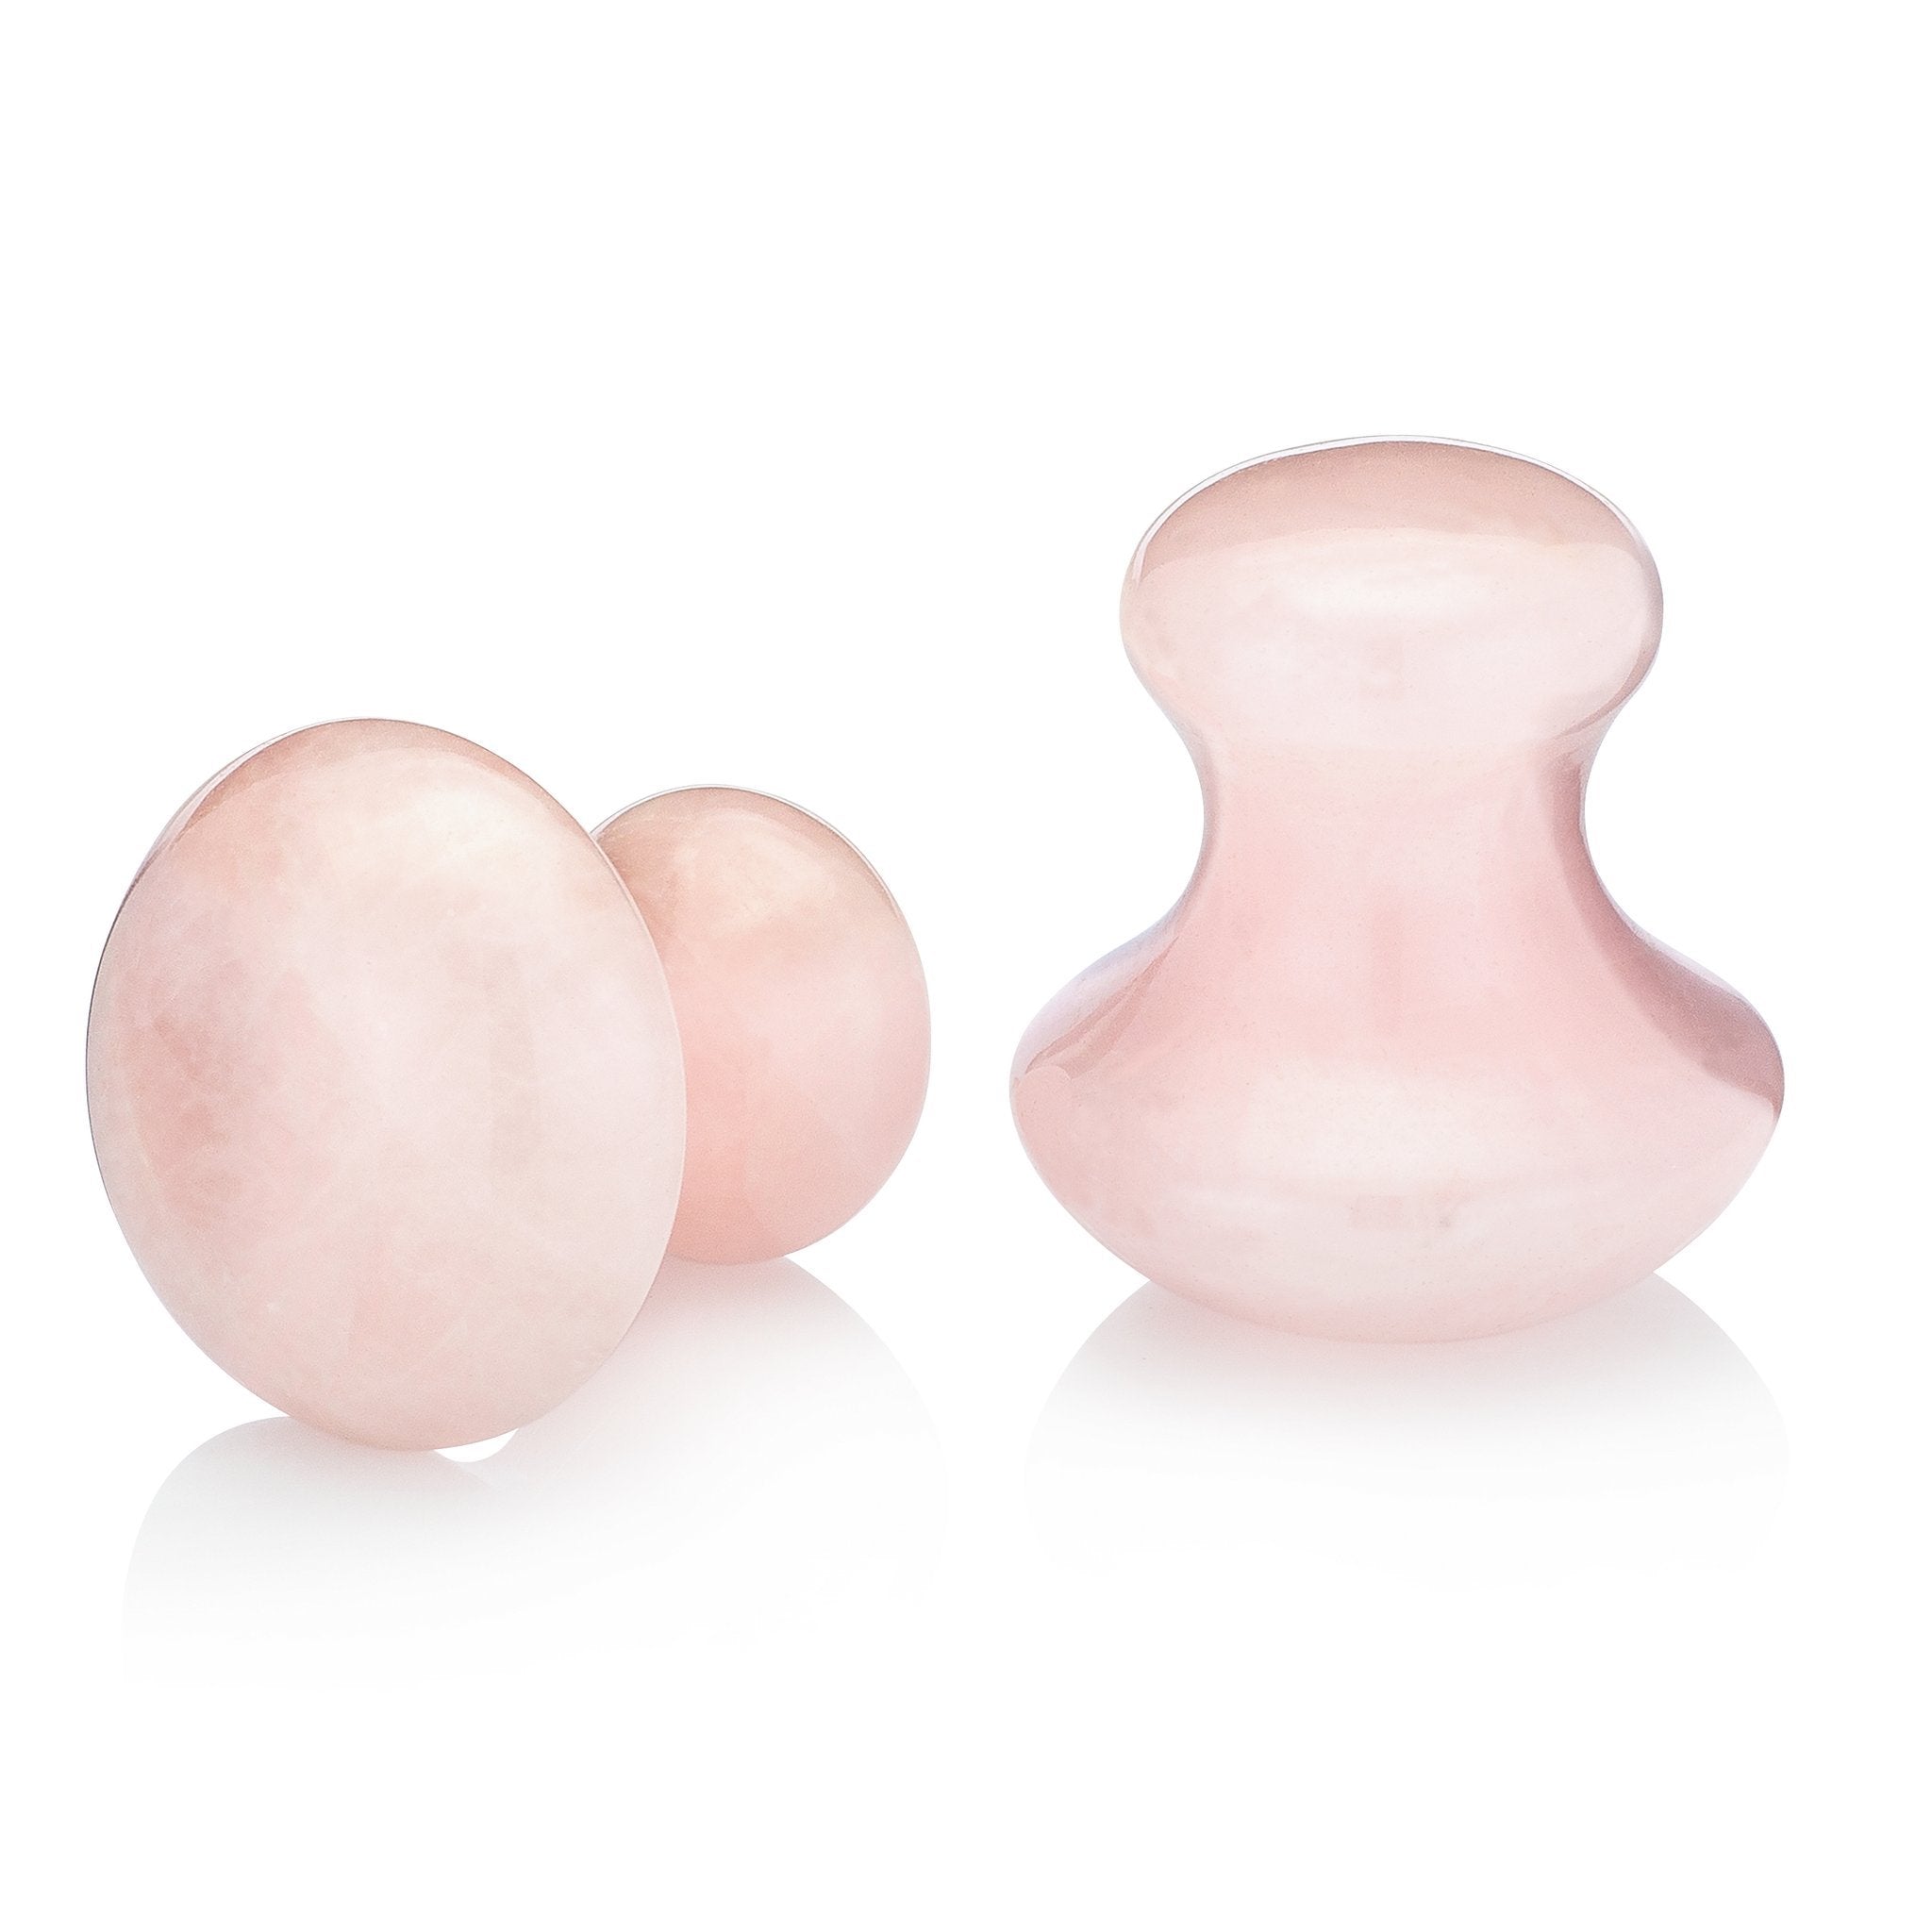 Outil facial en quartz rose (1 pièce) - Durable et ayurvédique